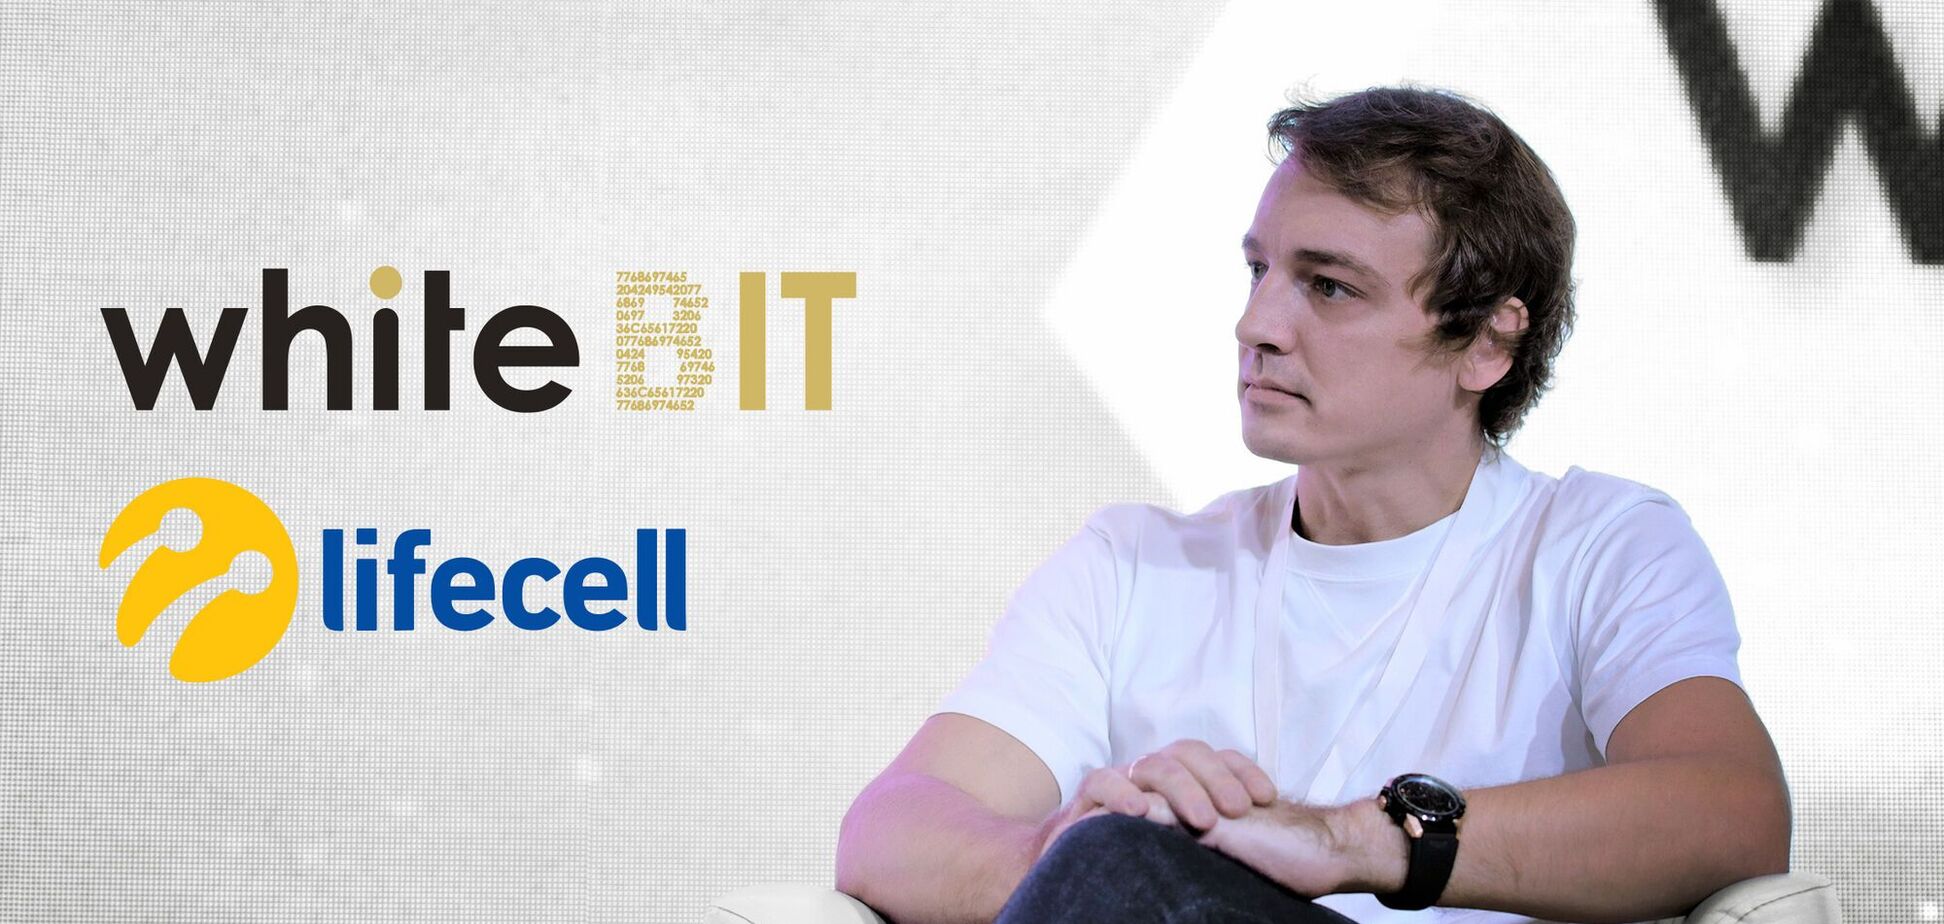 WhiteBIT та lifecell починають партнерство